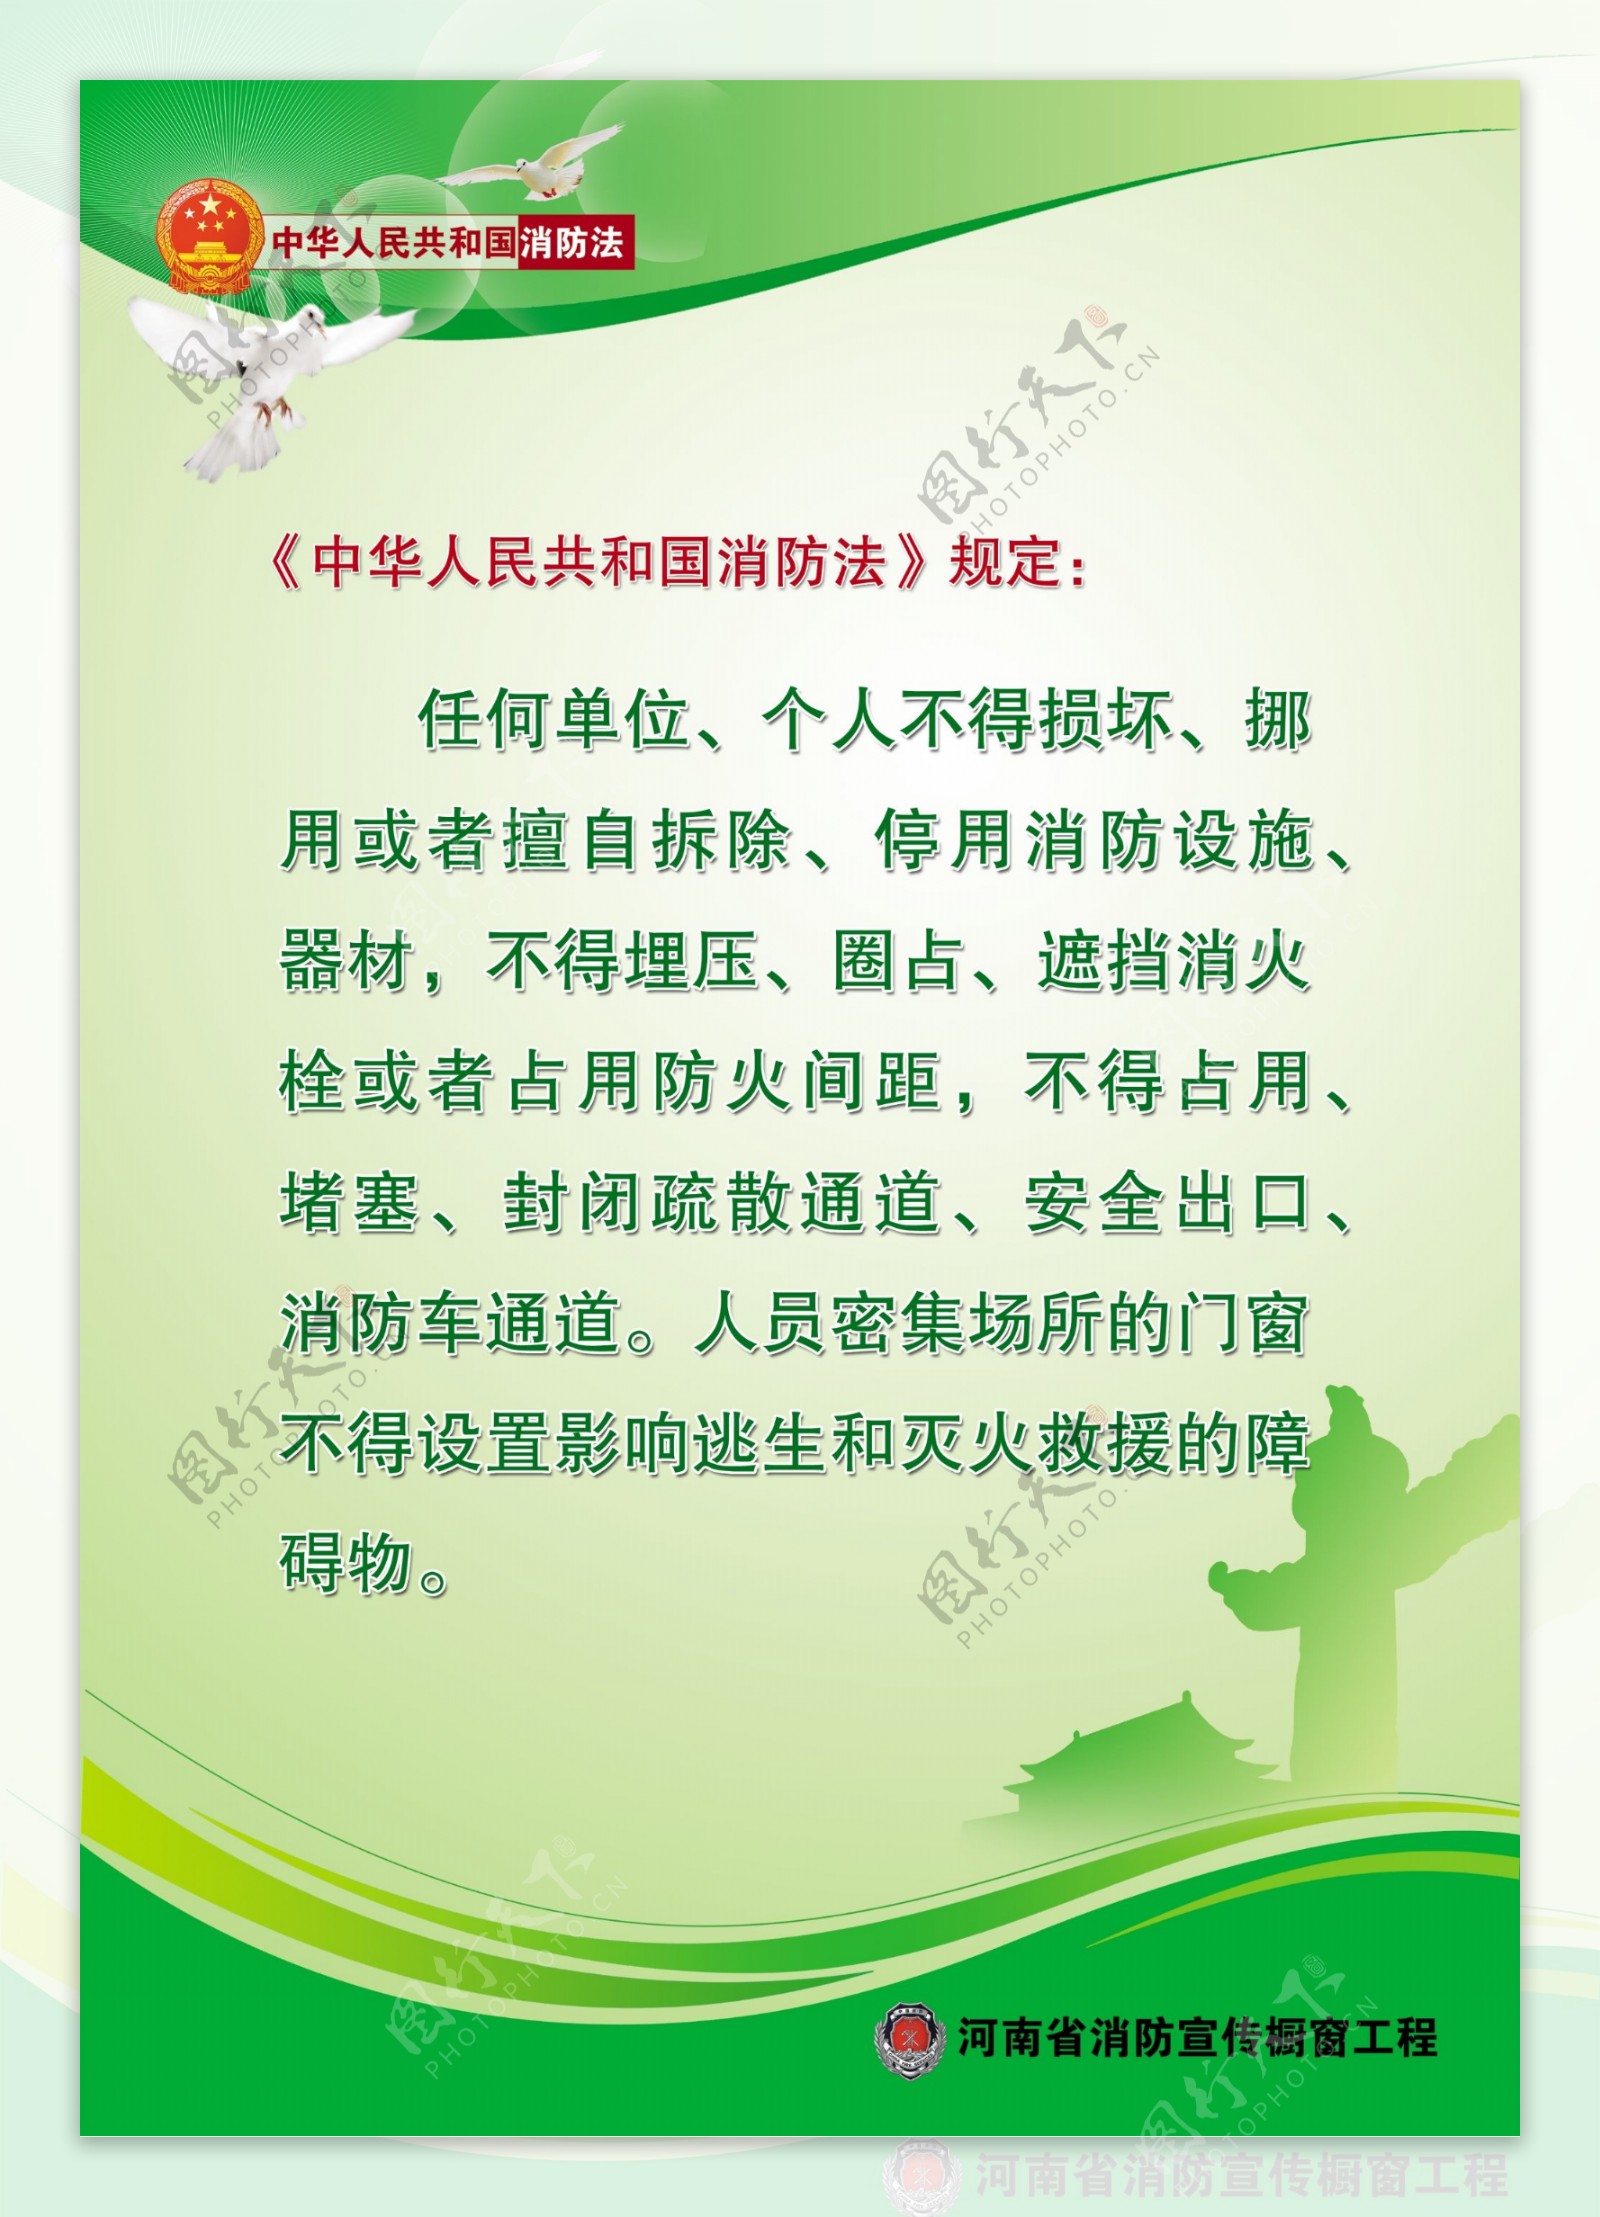 河南消防宣传橱窗工程中国消防法消防宣传竖11图片